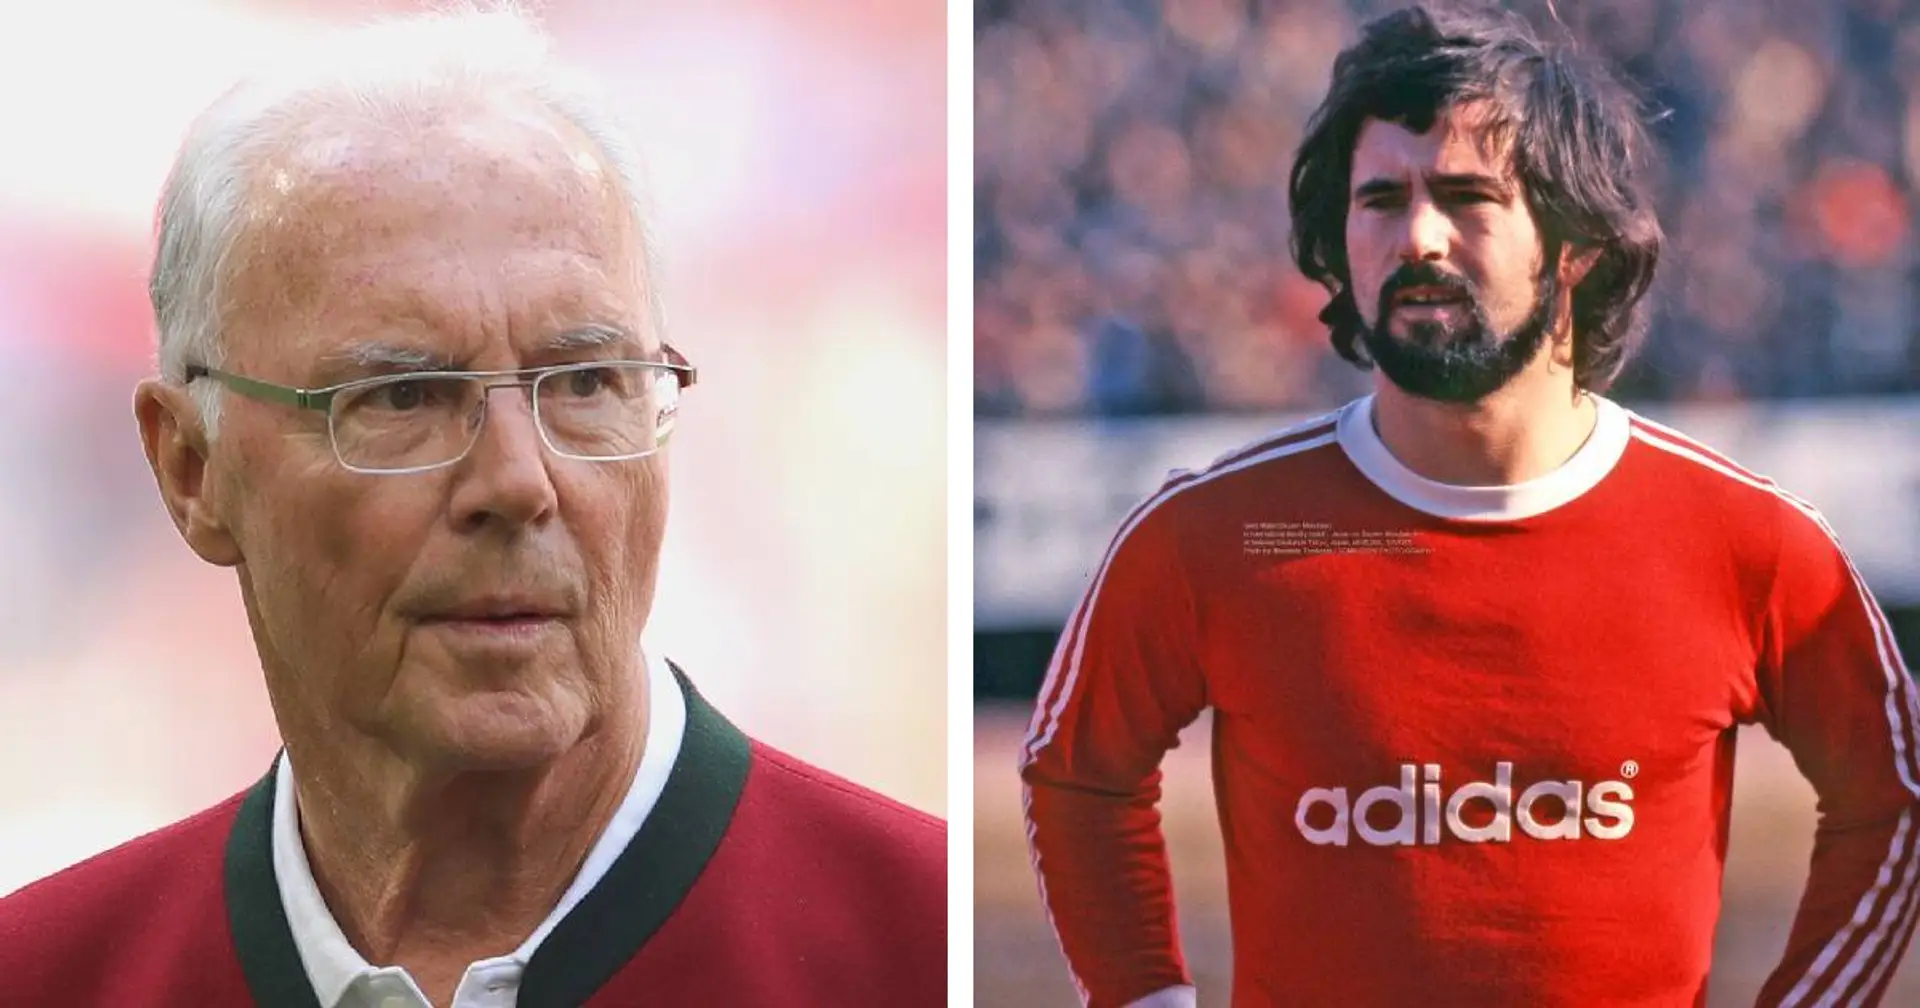 "Gerd war der, der mir die Leichtigkeit gegeben hat": Beckenbauer bezeichnet Müller als Mentalitätsspieler